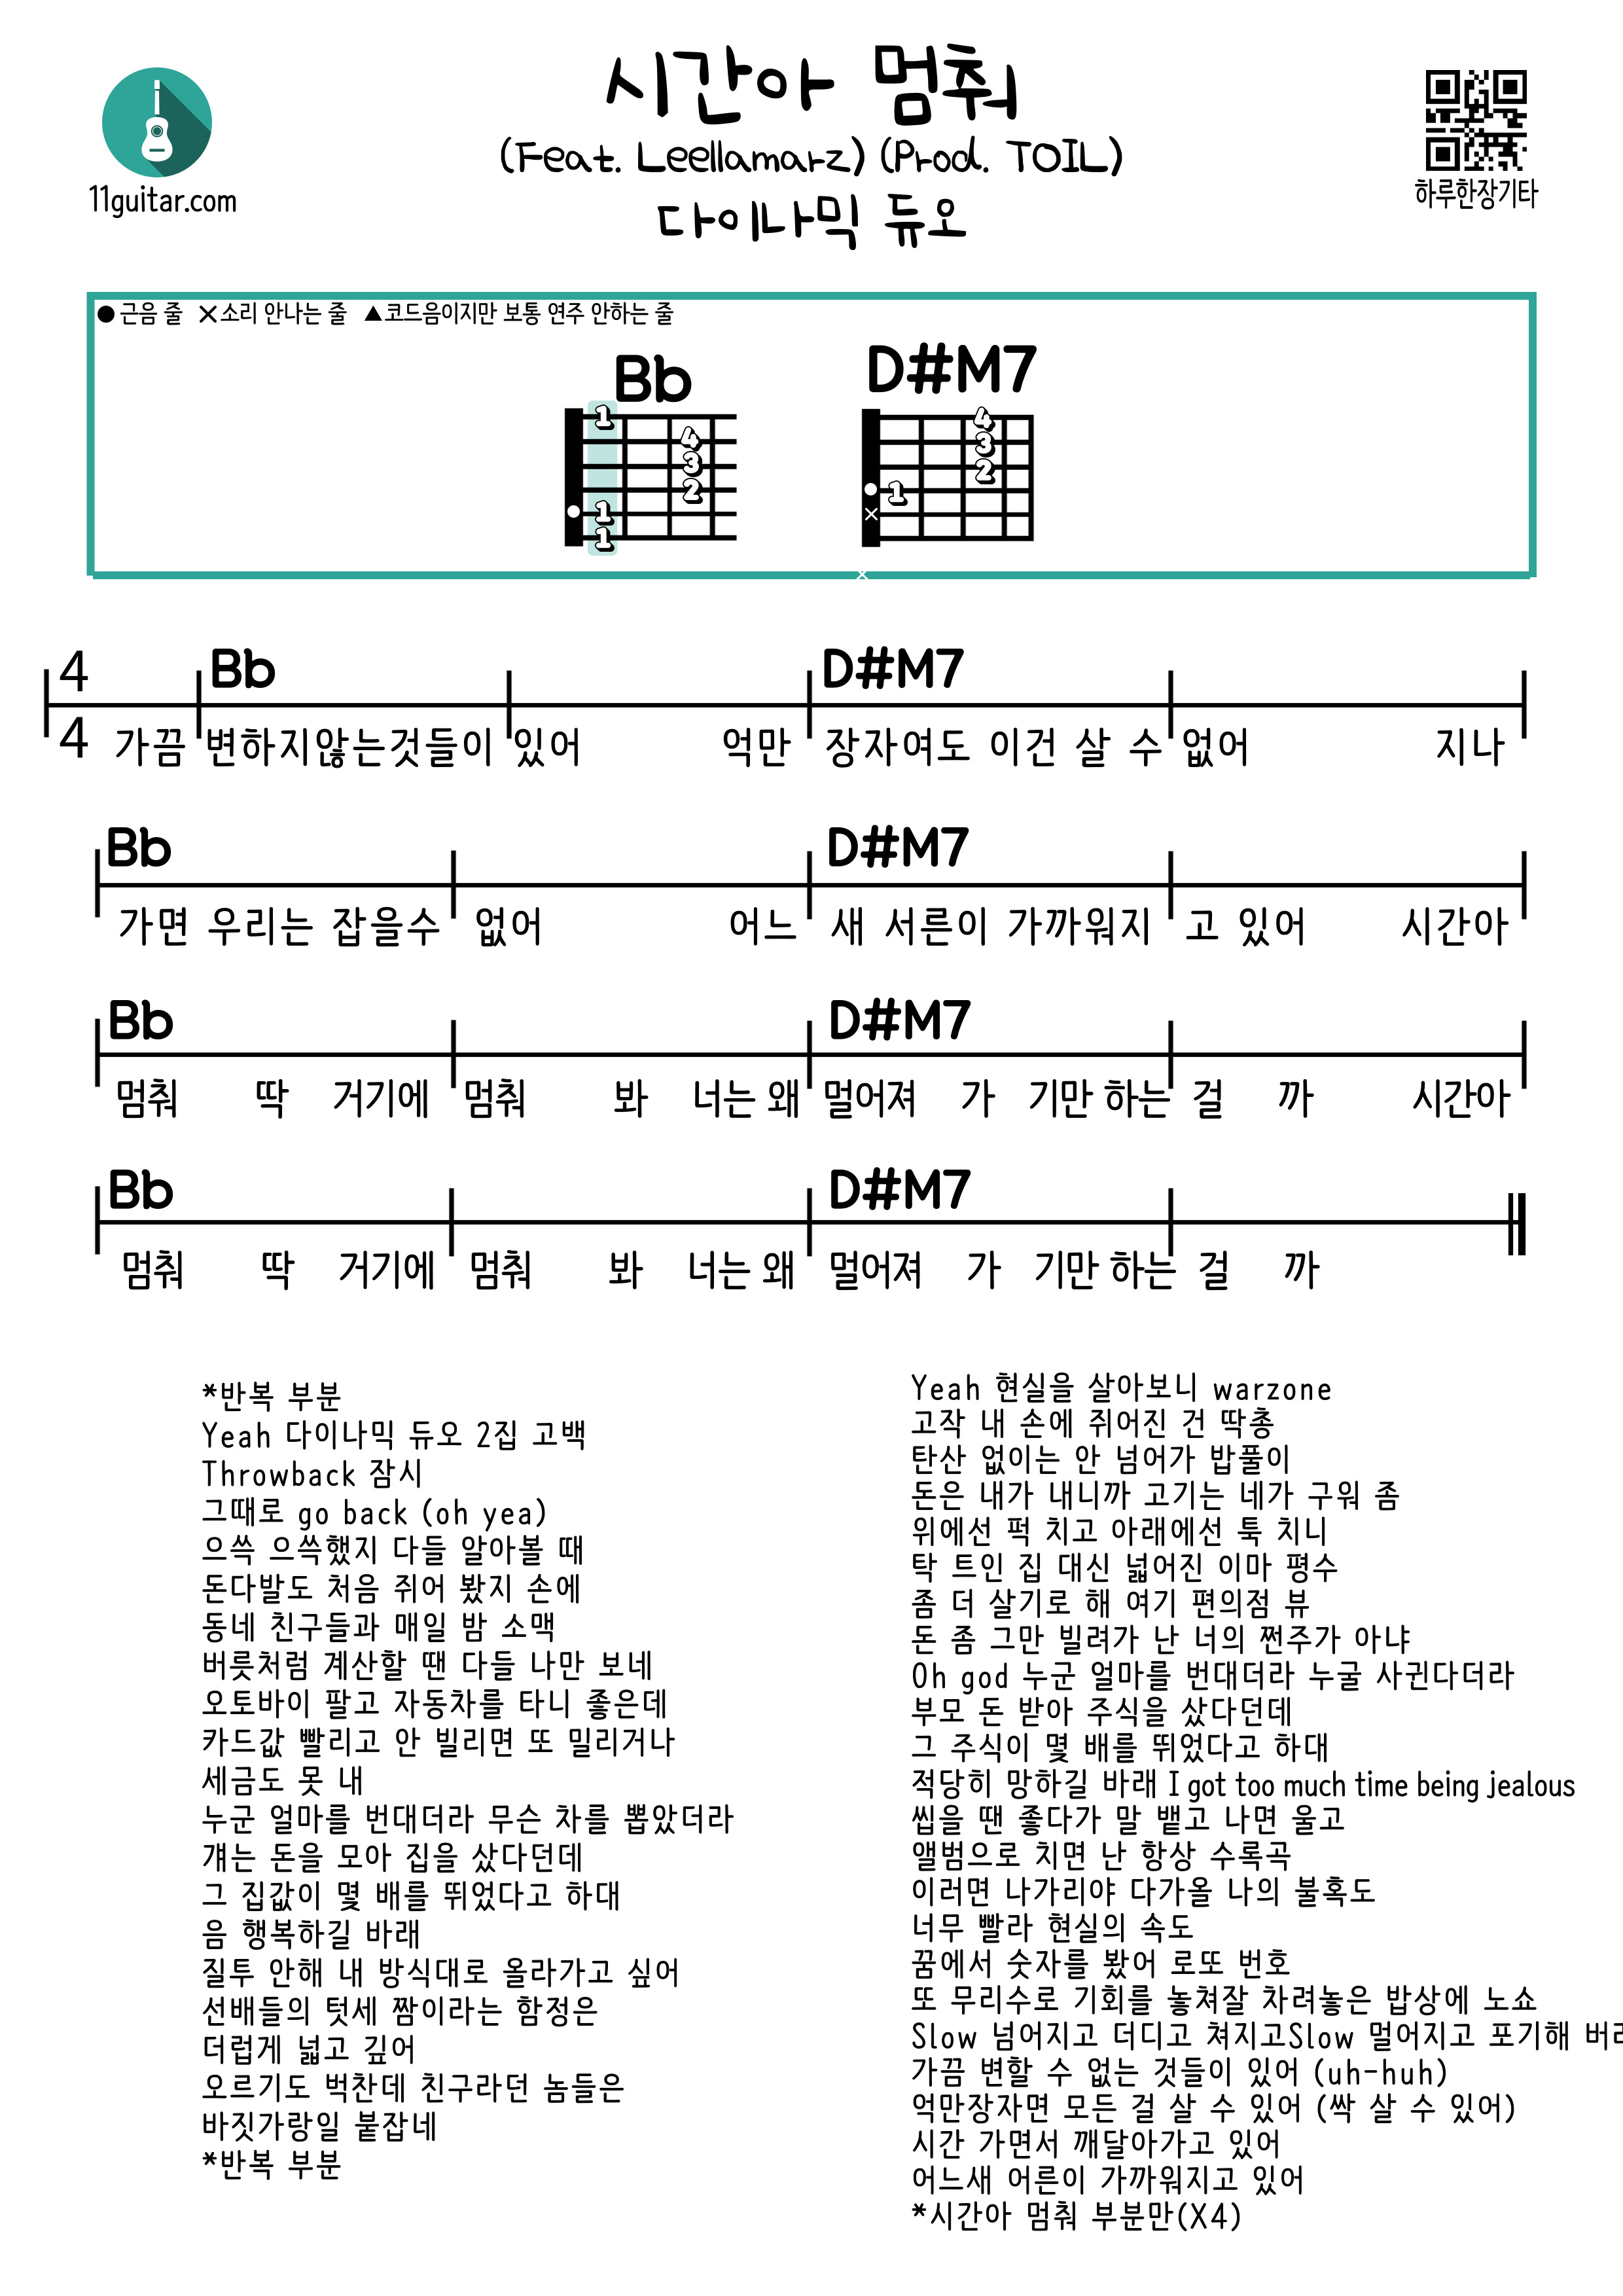 시간아 멈춰 (Feat. Leellamarz) (Prod. TOIL) (다이나믹 듀오) 기타 쉬운 코드 악보